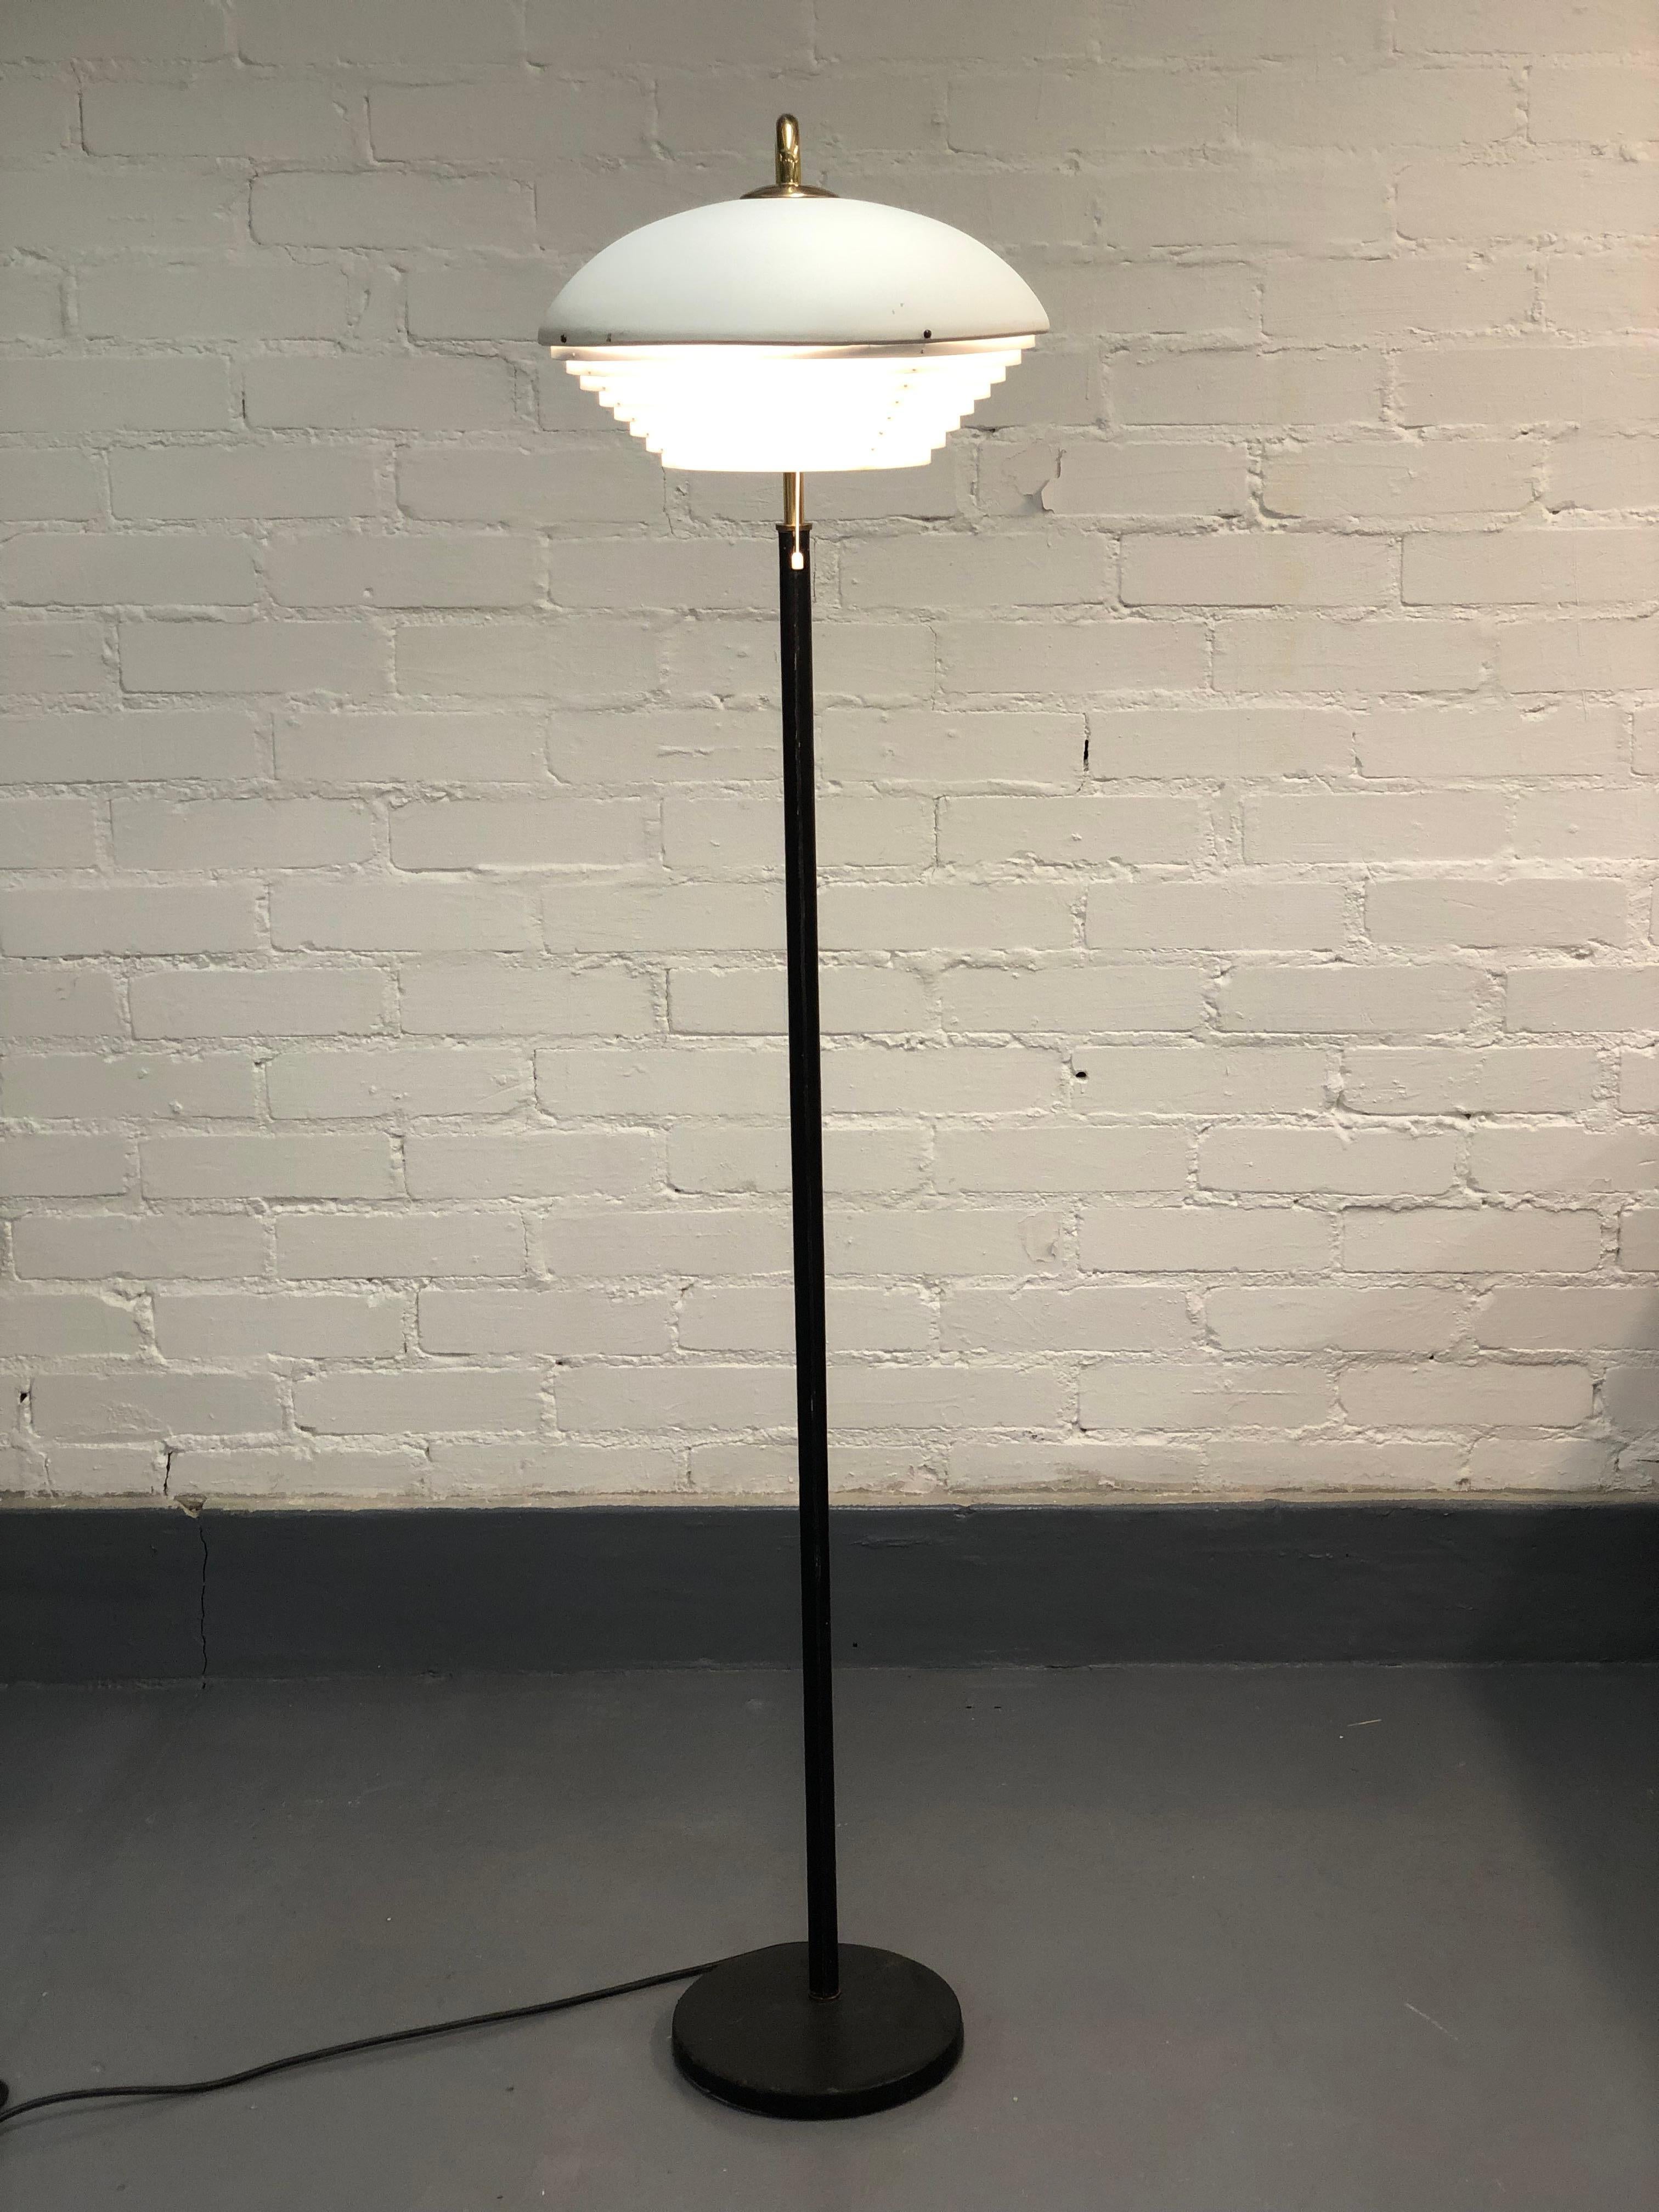 Diese ikonische Stehlampe von Alvar Aalto hat einen Schaft aus Leder, Messingdetails und ein weißes Metallnest auf der Spitze. Der Glanz dieser Lampe liegt in der Einfachheit und der Art und Weise, wie all diese verschiedenen Materialien